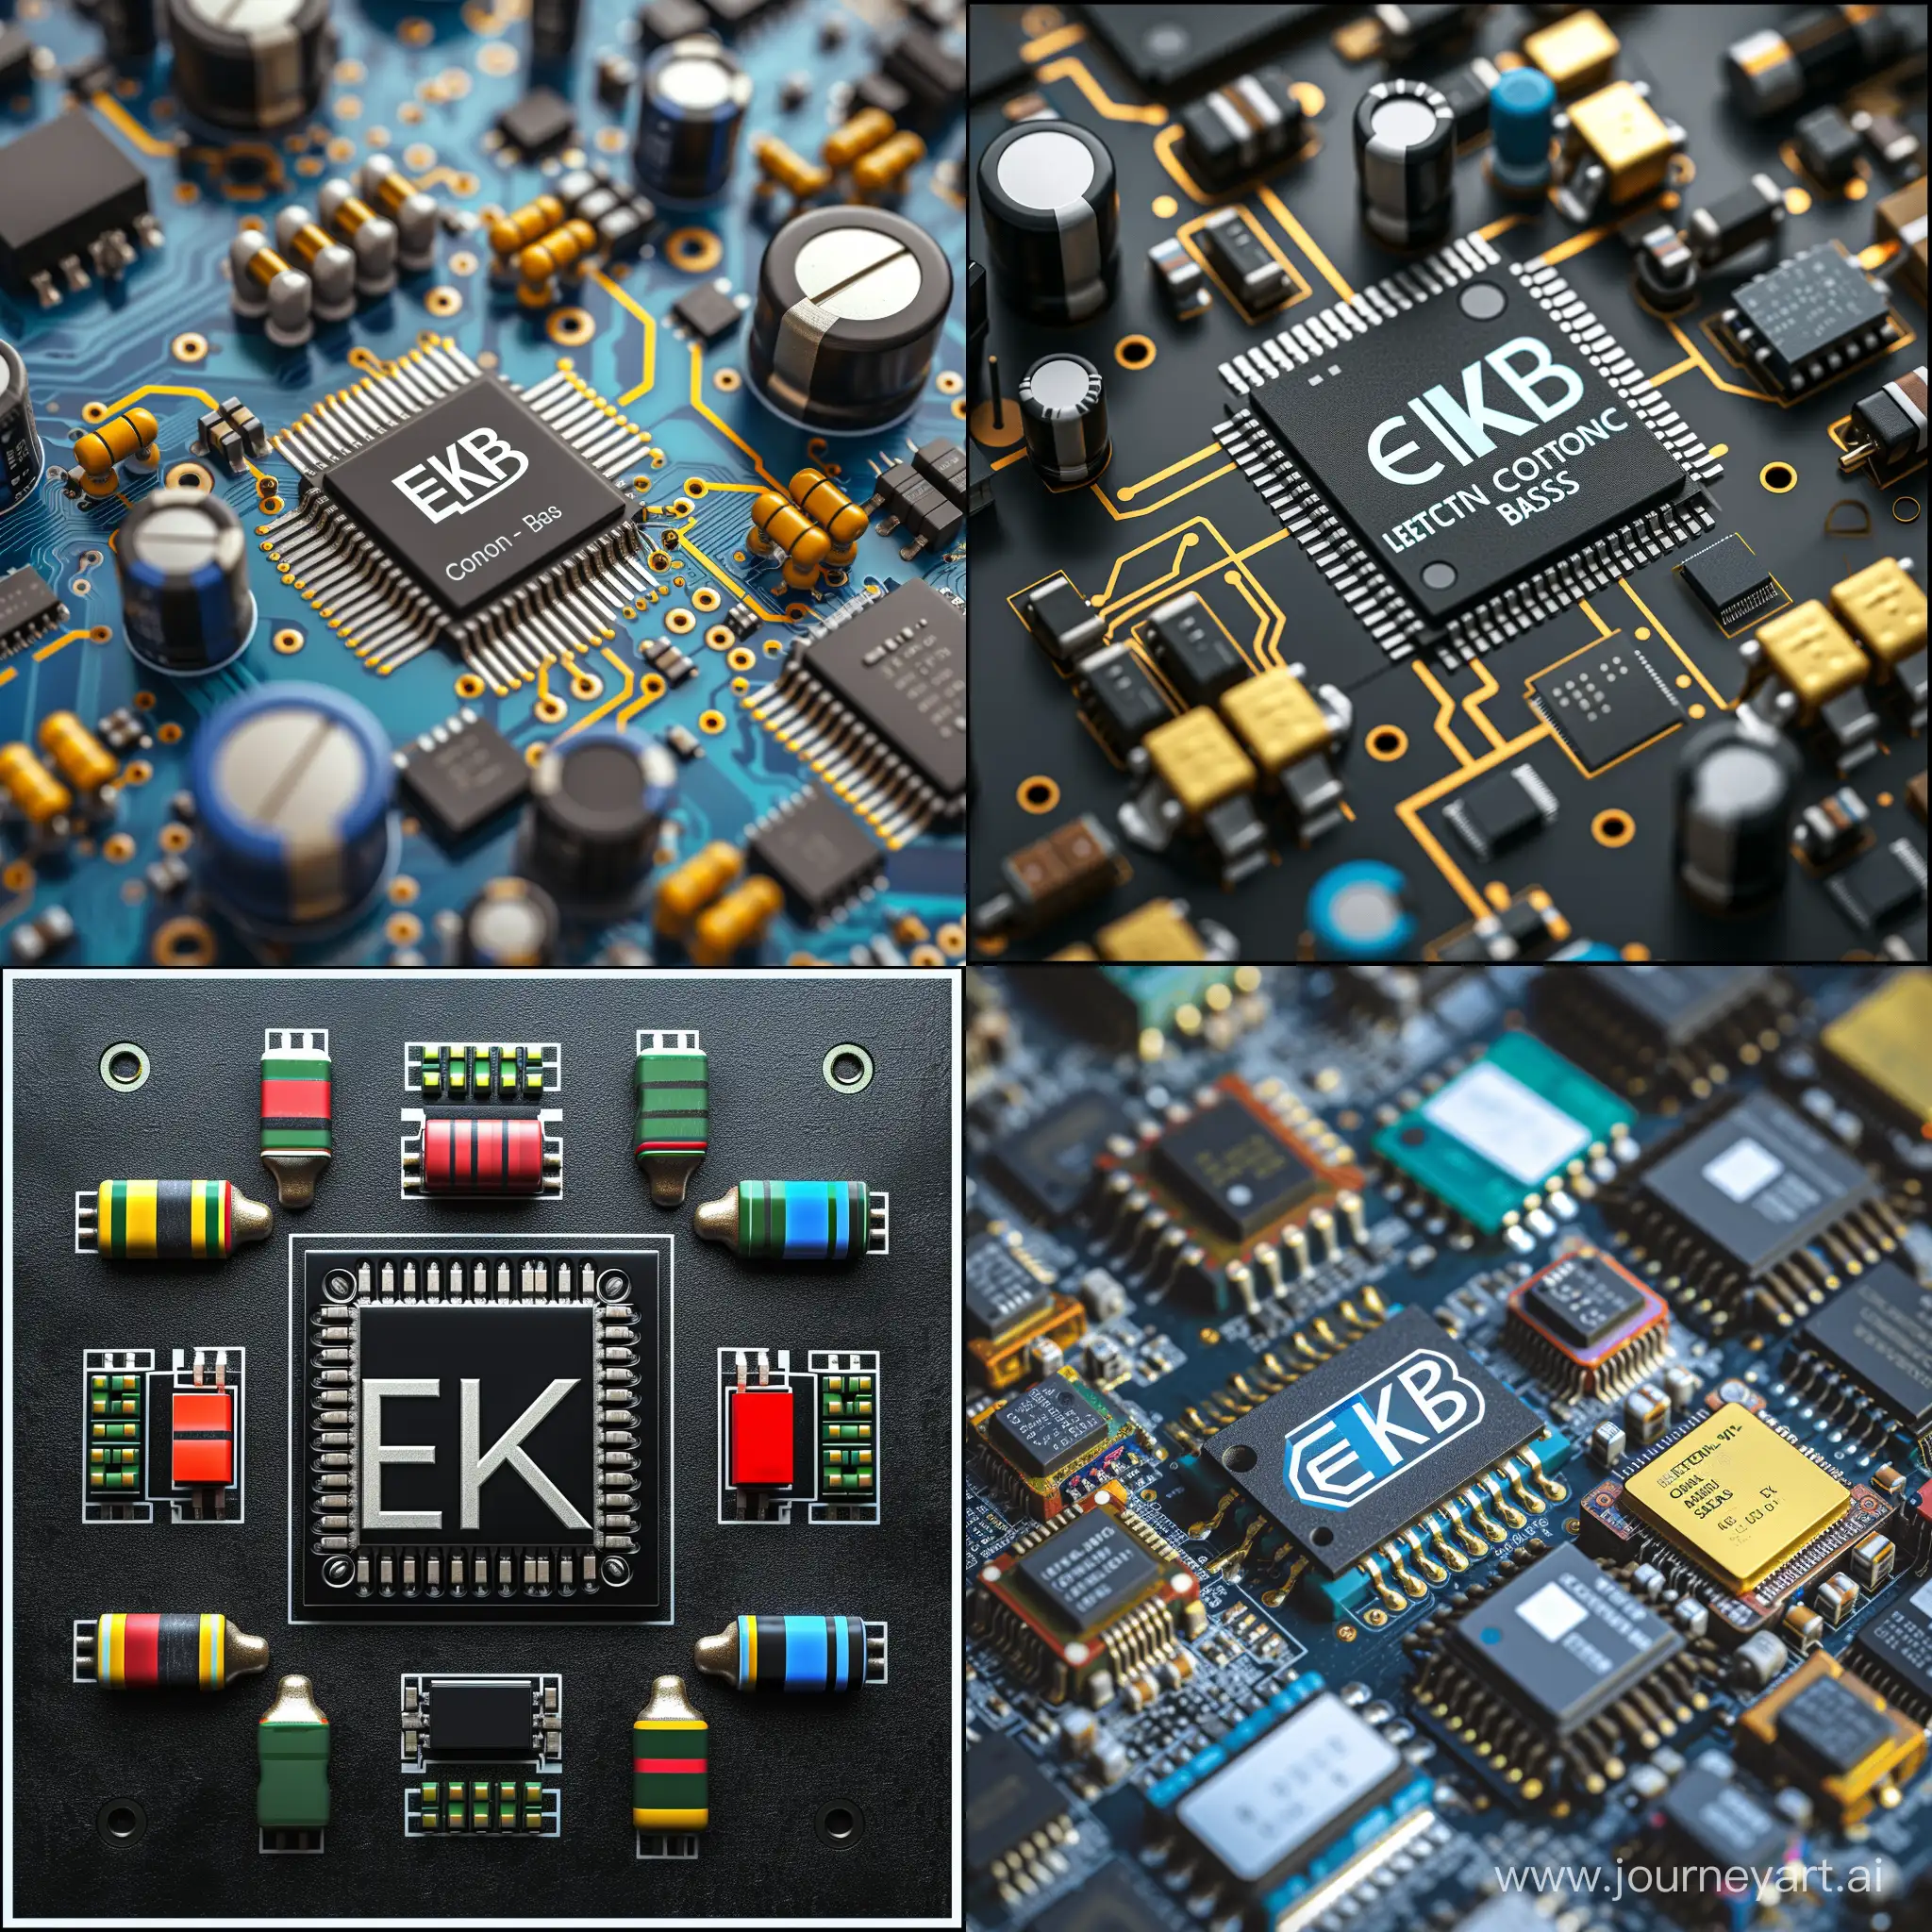 Варианты логотипа ЭКБ (Электронно-компонентная база) с микросхемой, резисторами или транзисторами 